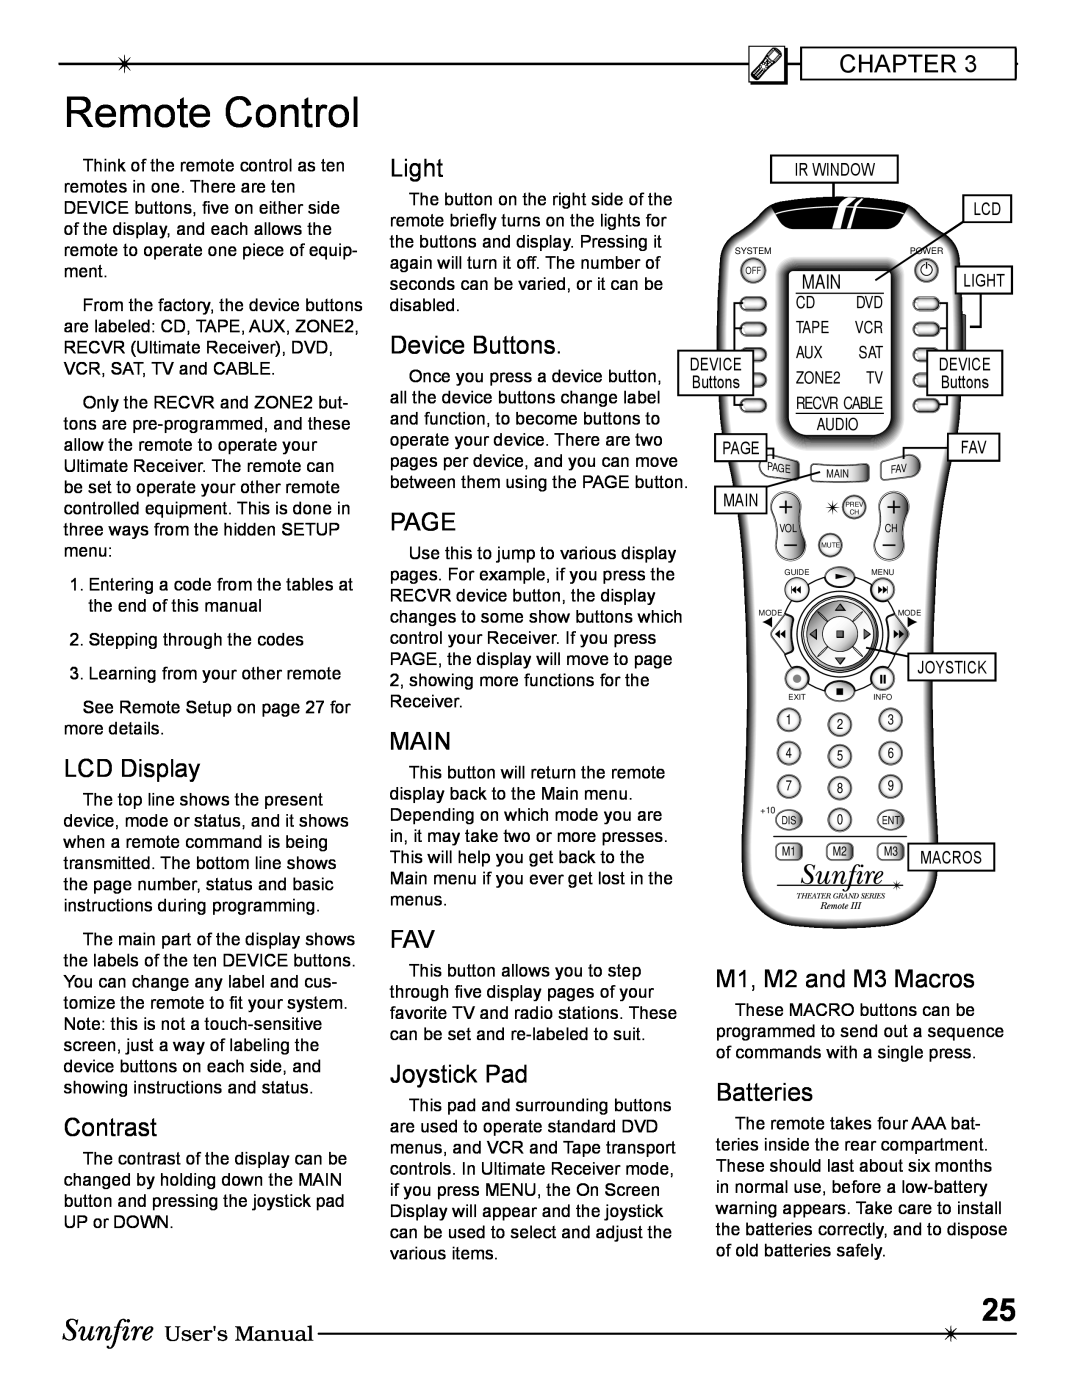 Sunfire Radio manual Remote Control 